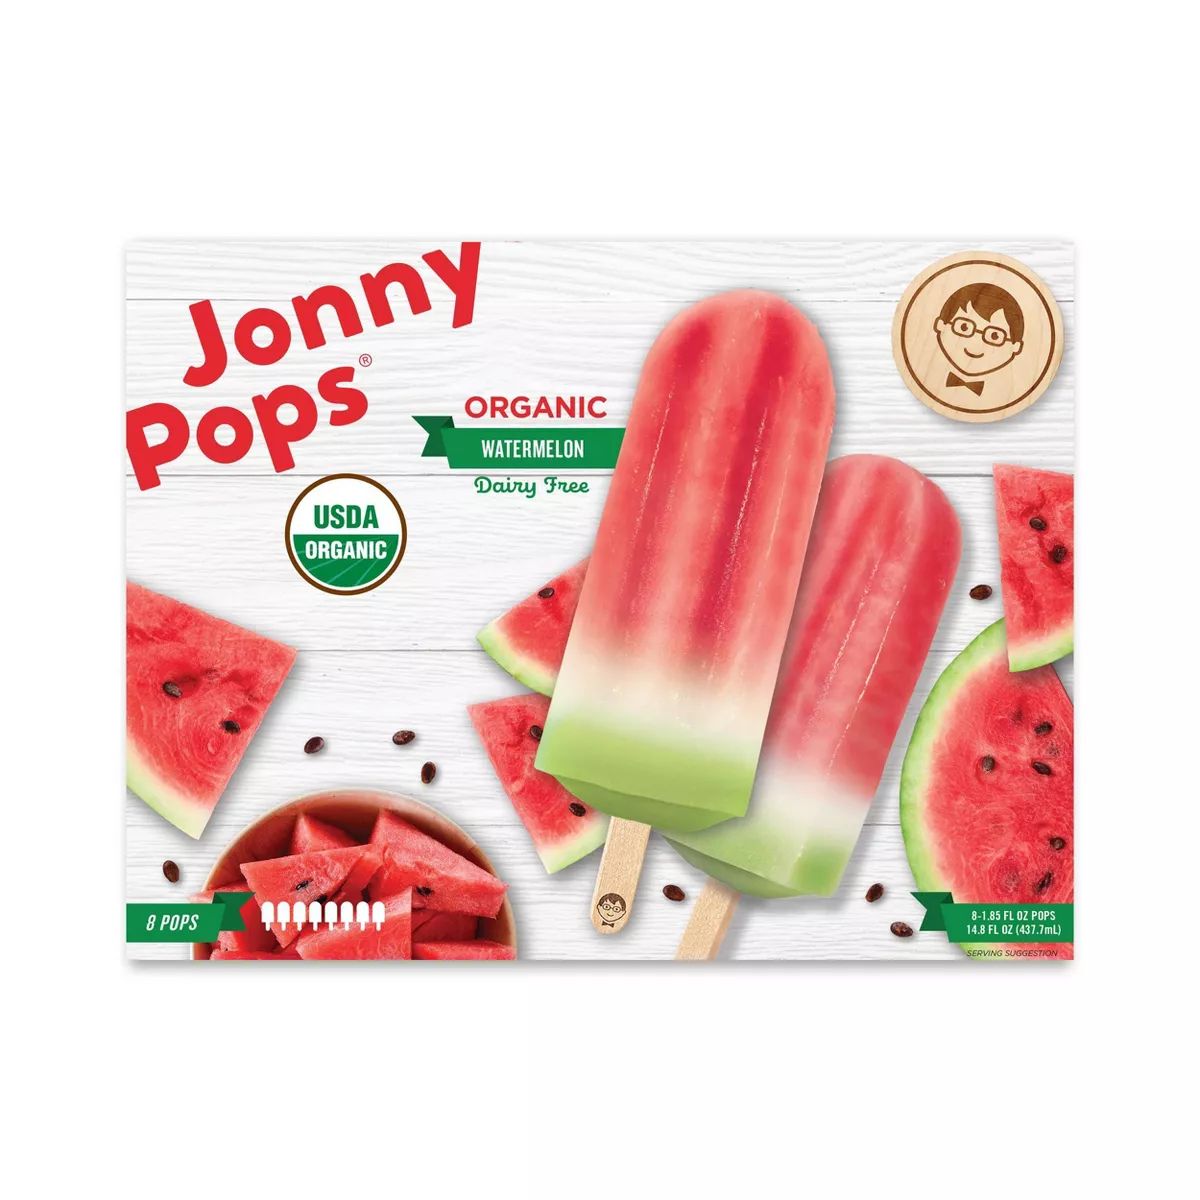 JonnyPops Watermelon Frozen Water Pop - 14.8oz | Target